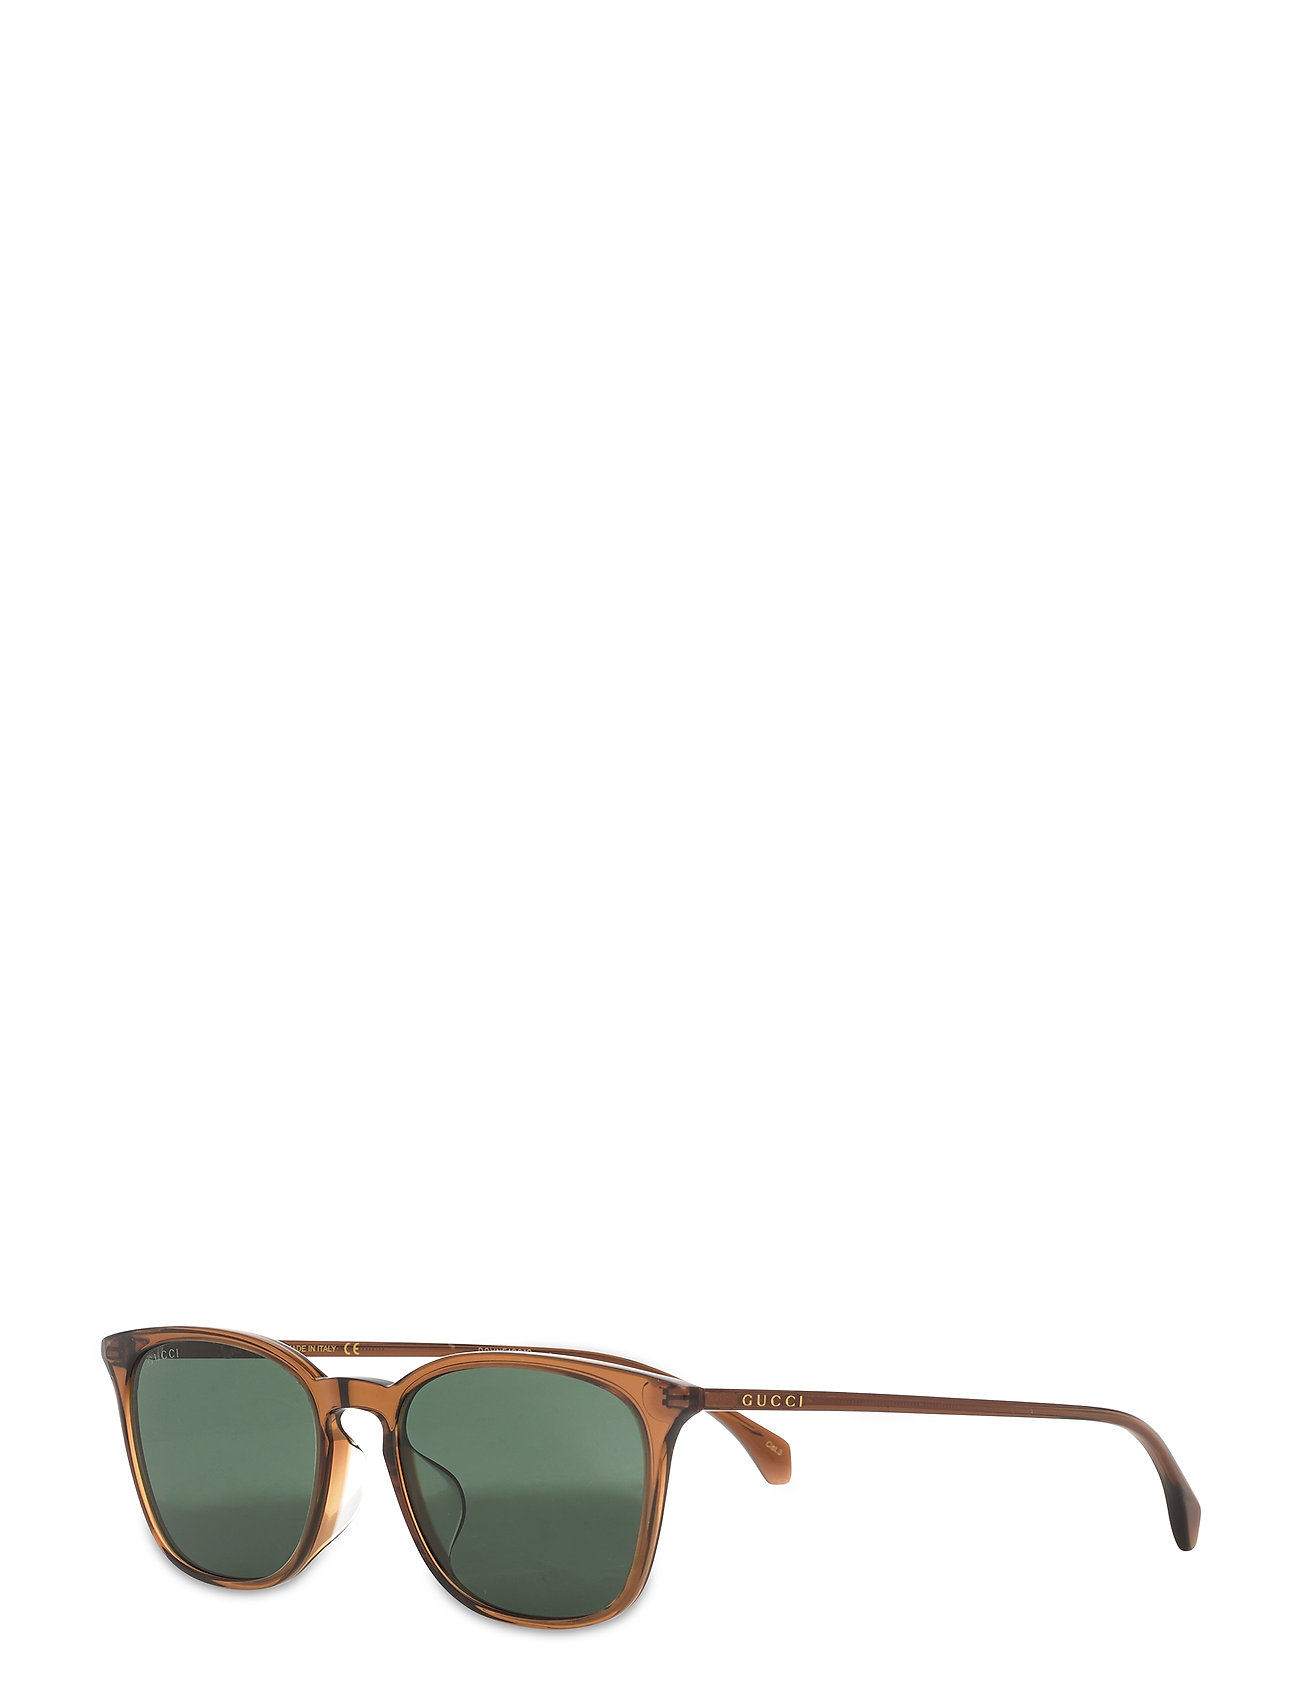 Brun Gucci Wayfarer Solbriller Gucci Sunglasses wayfarer solbriller for - Pashion.dk